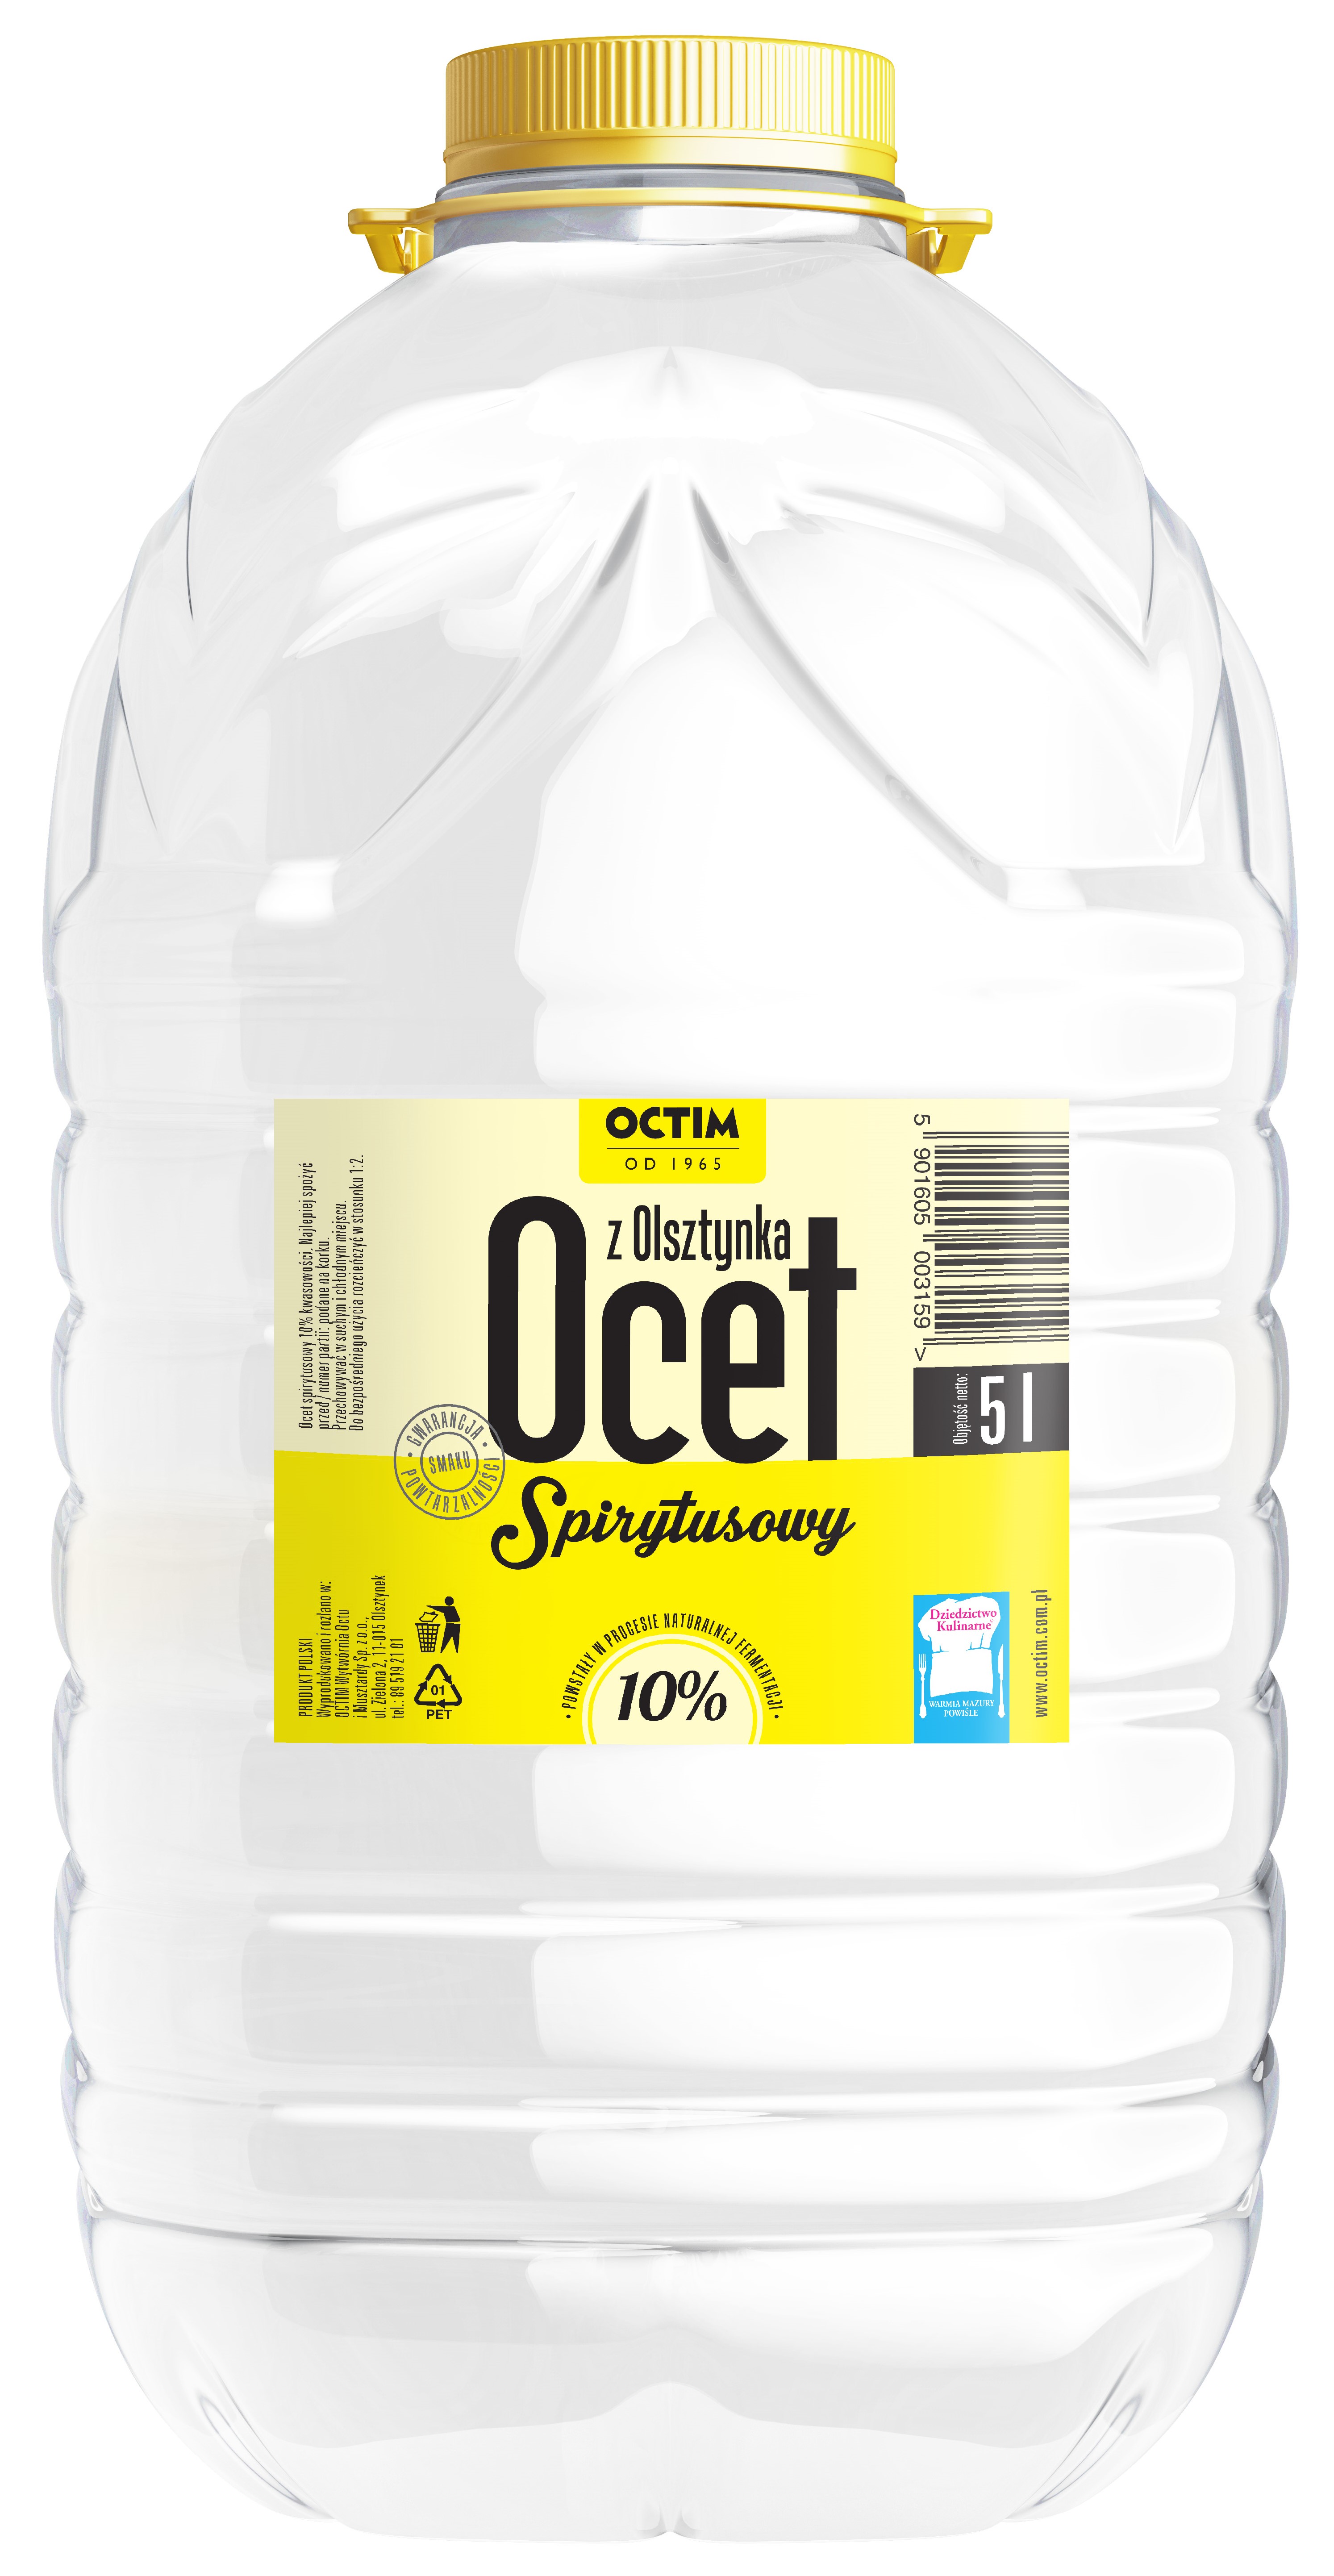 Octim спиртовой уксус 10% кислотности